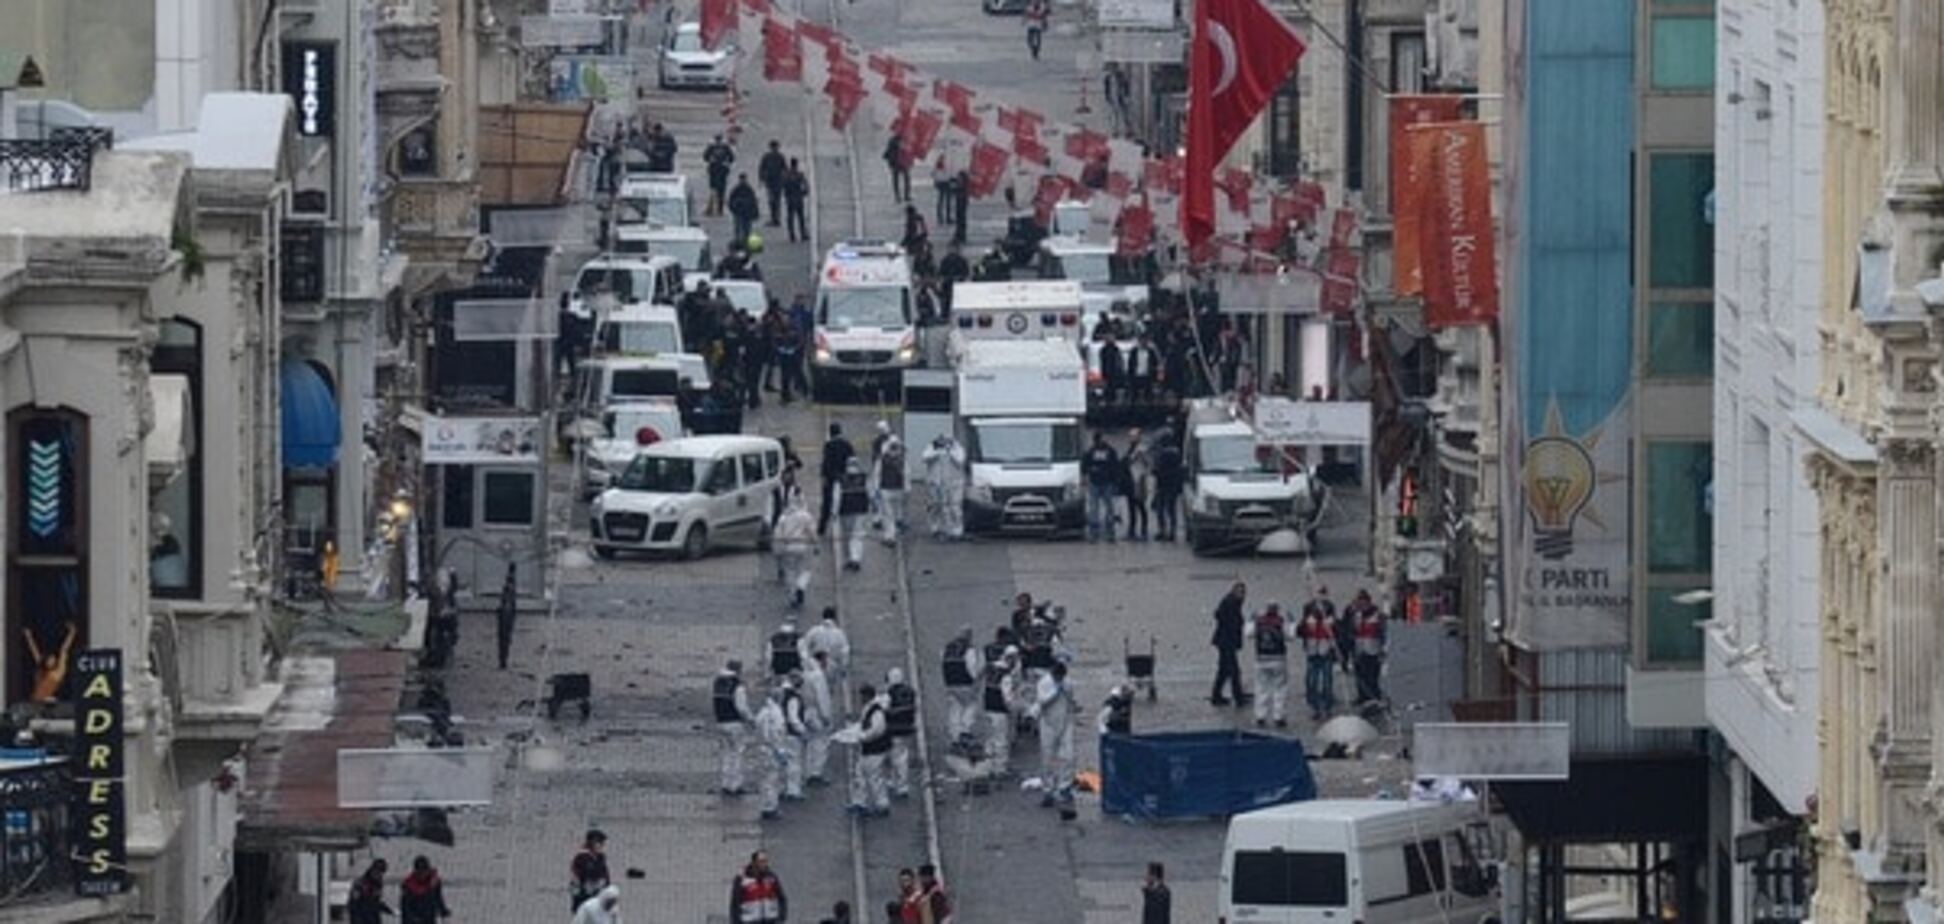 Гряде кривава неділя: терористи розіслали sms з погрозами жителям Стамбула